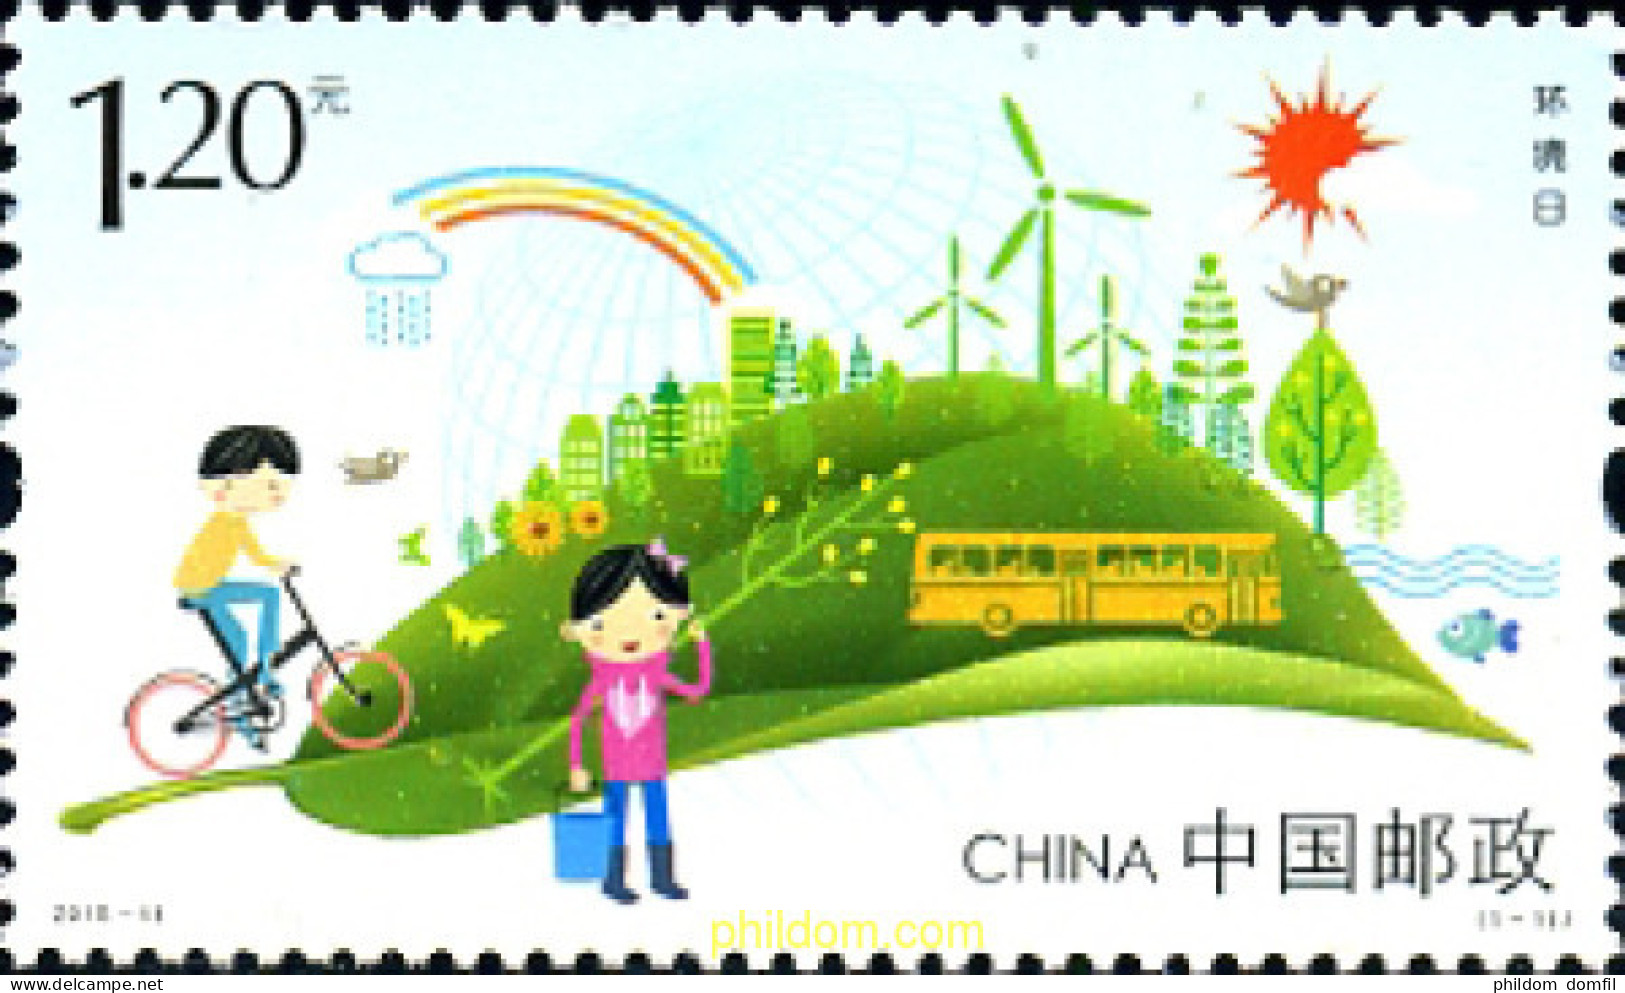 348240 MNH CHINA. República Popular 2015 DÍA MUNDIAL DEL MEDIO AMBIENTE - Unused Stamps